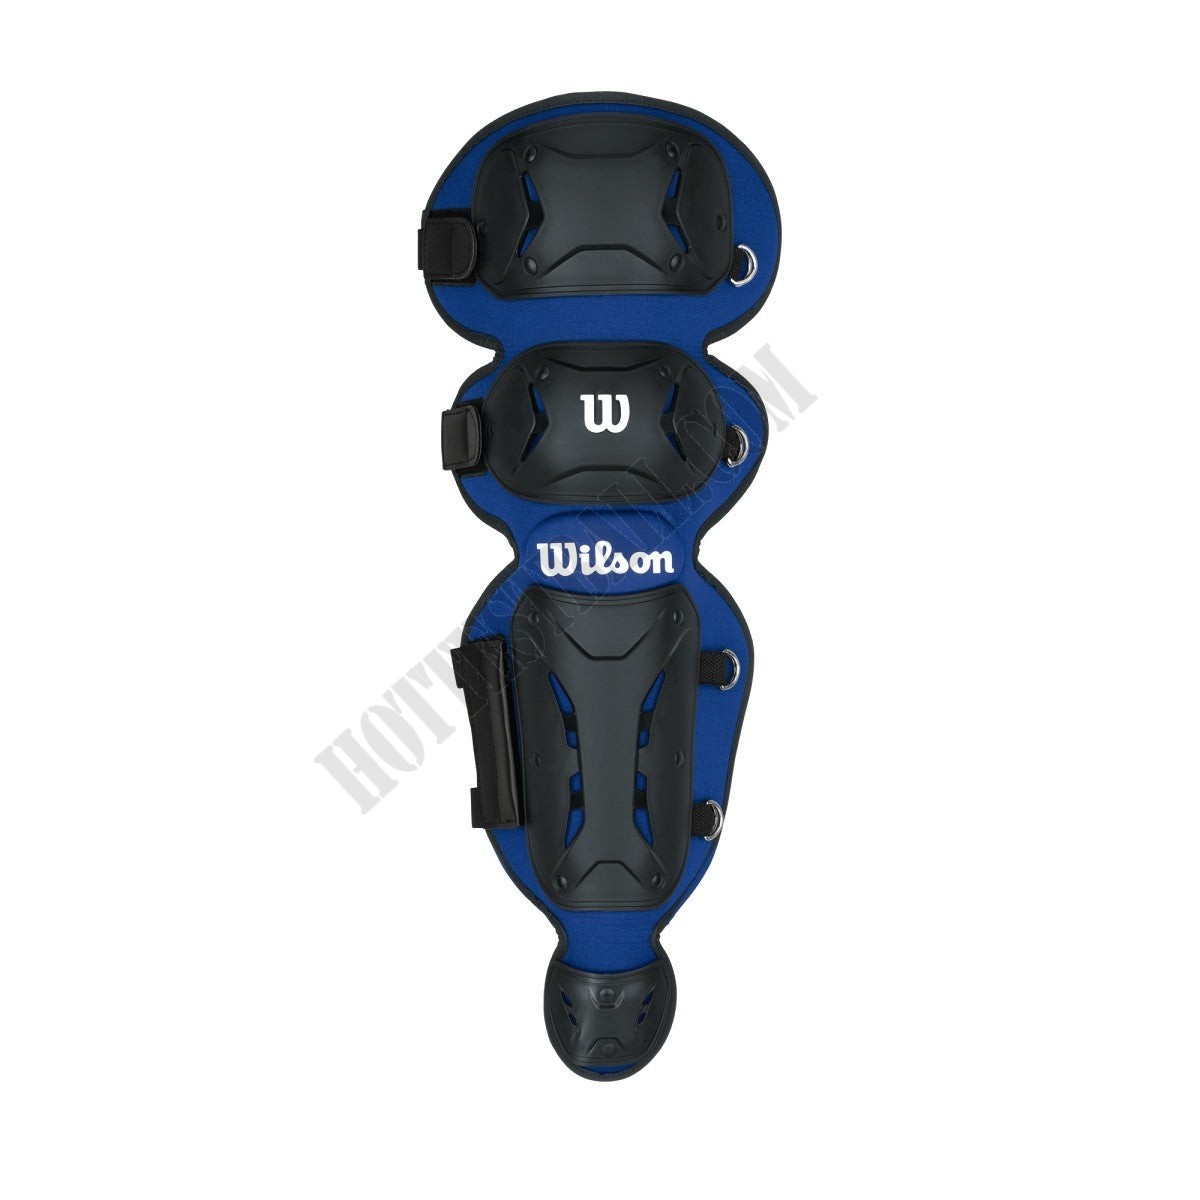 EZ Gear Catcher's Kit - New York Mets - Wilson Discount Store - -3